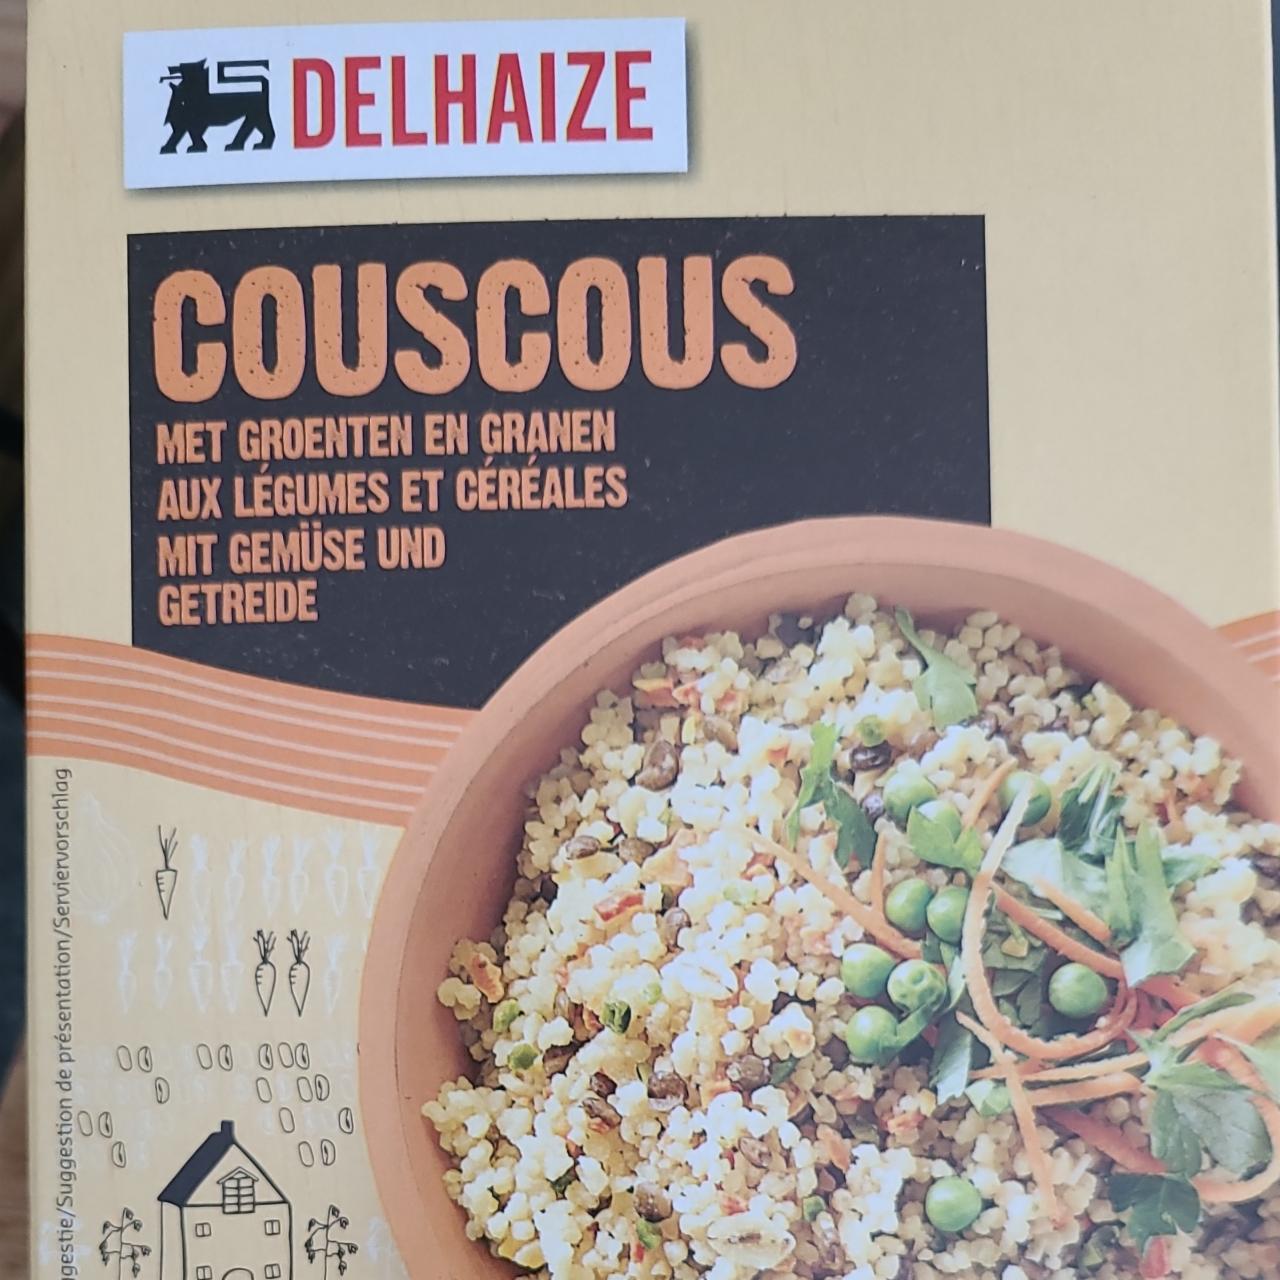 Fotografie - Couscous met groenten en granen Delhaize